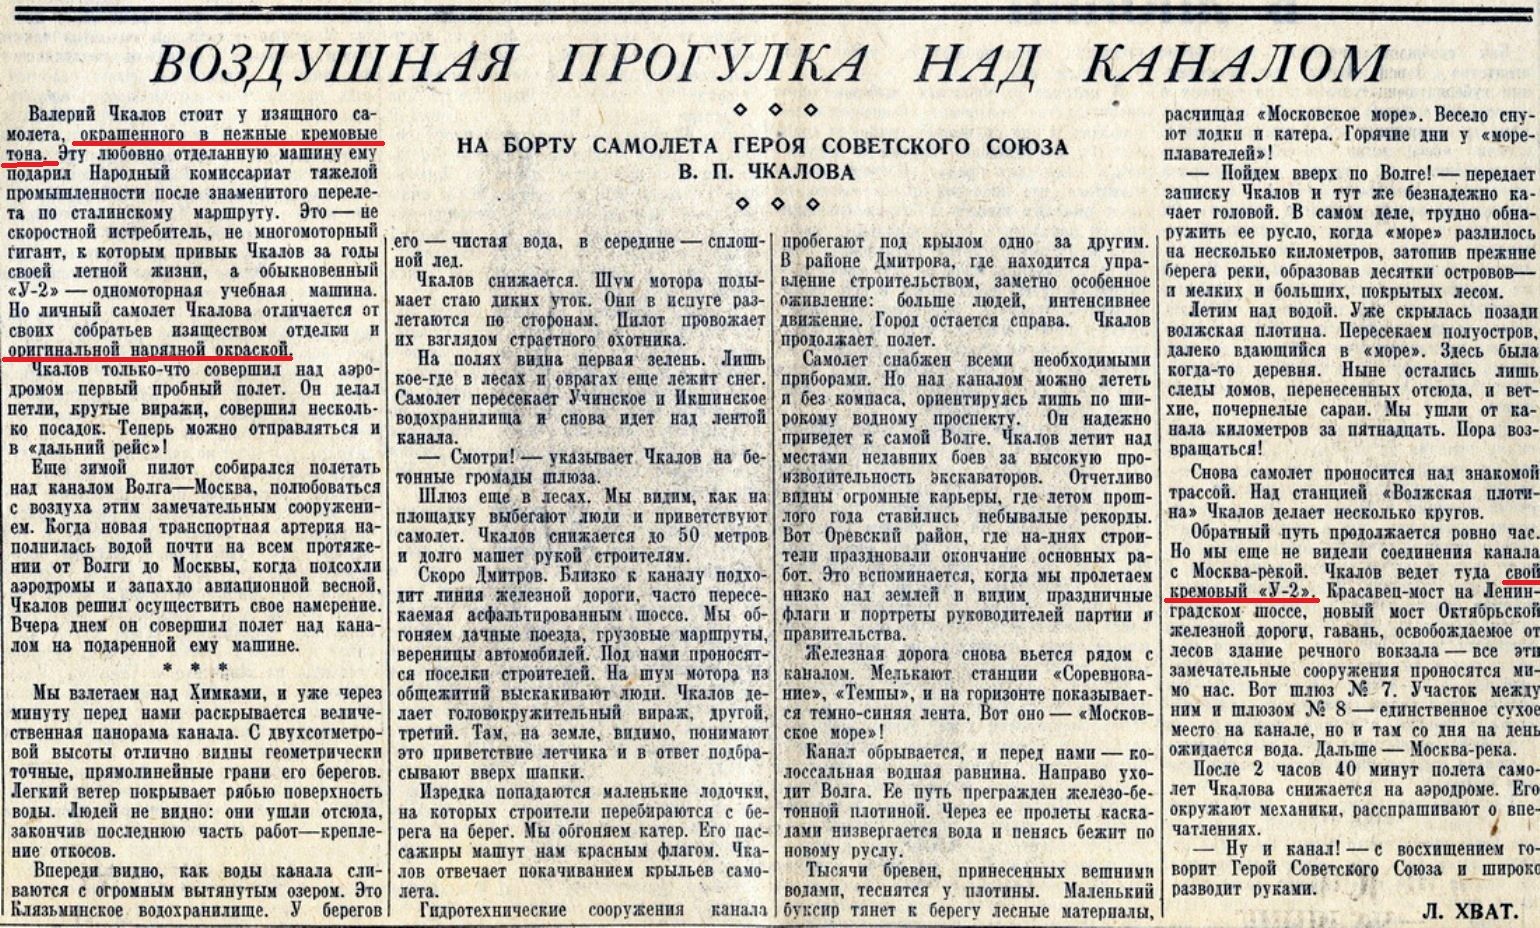 Pravda-17.04.1937.jpg